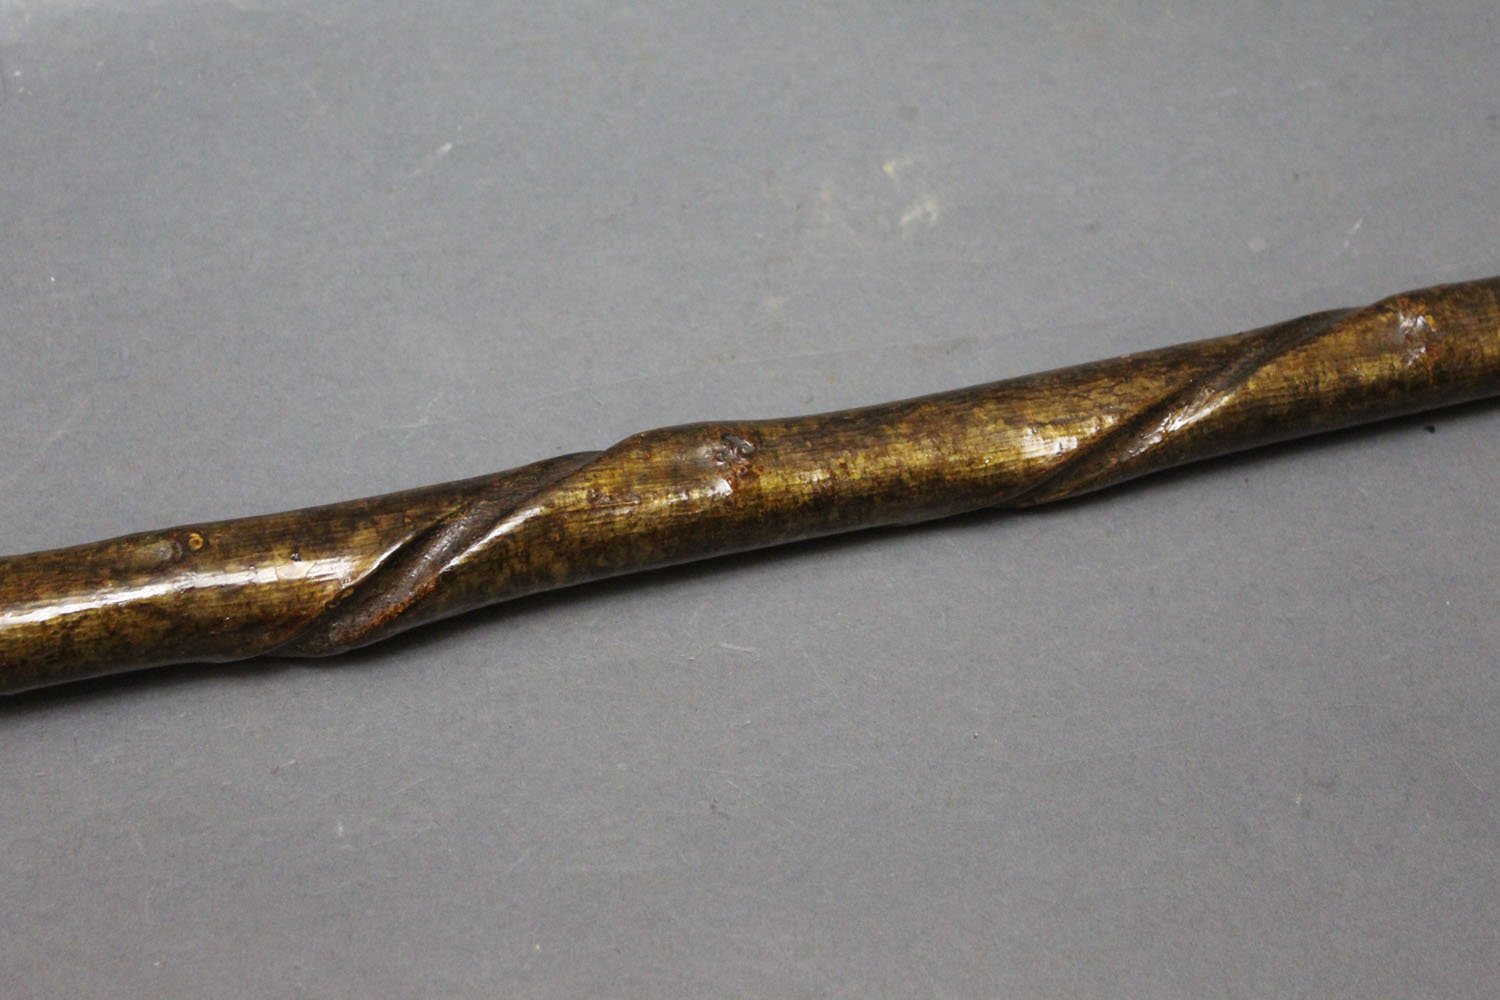 Hazel shaft walking stick, twisted shaft and stag antler handle. 123 cm. - Image 2 of 2